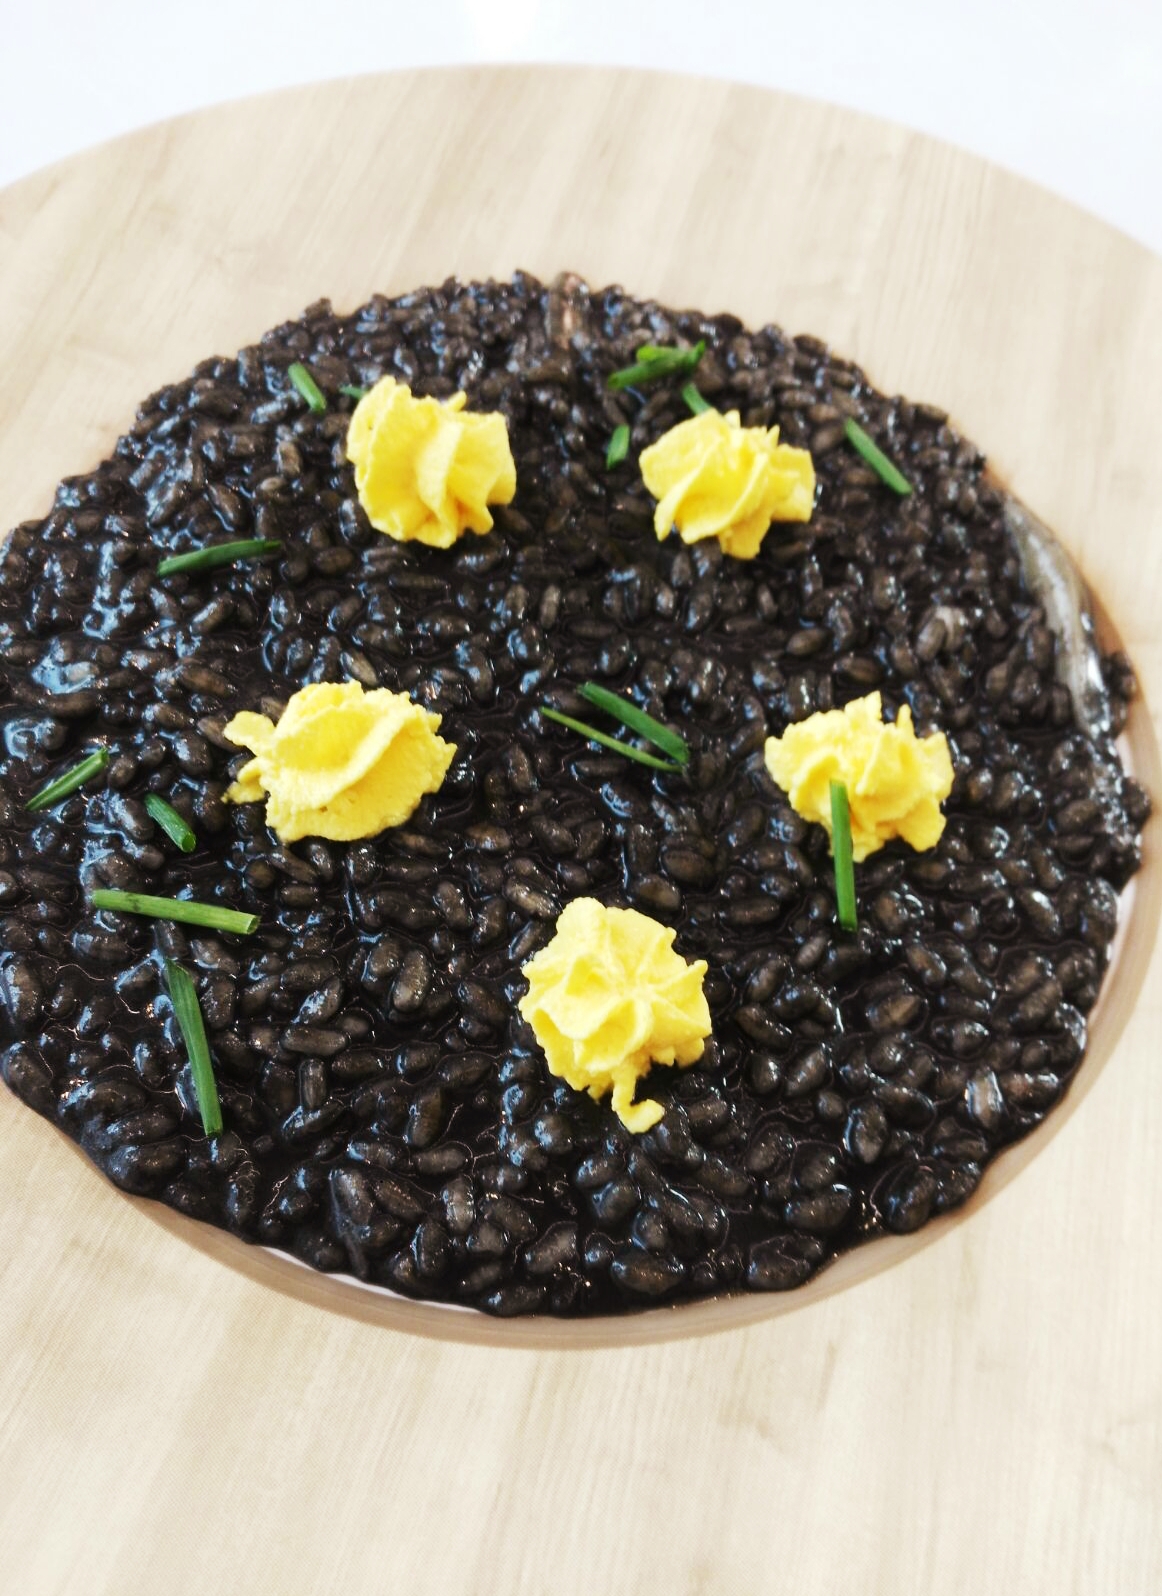 Il risotto al nero di seppia con mousse di zafferano ed erba cipollina, piatto eseguito da Carol Agostini